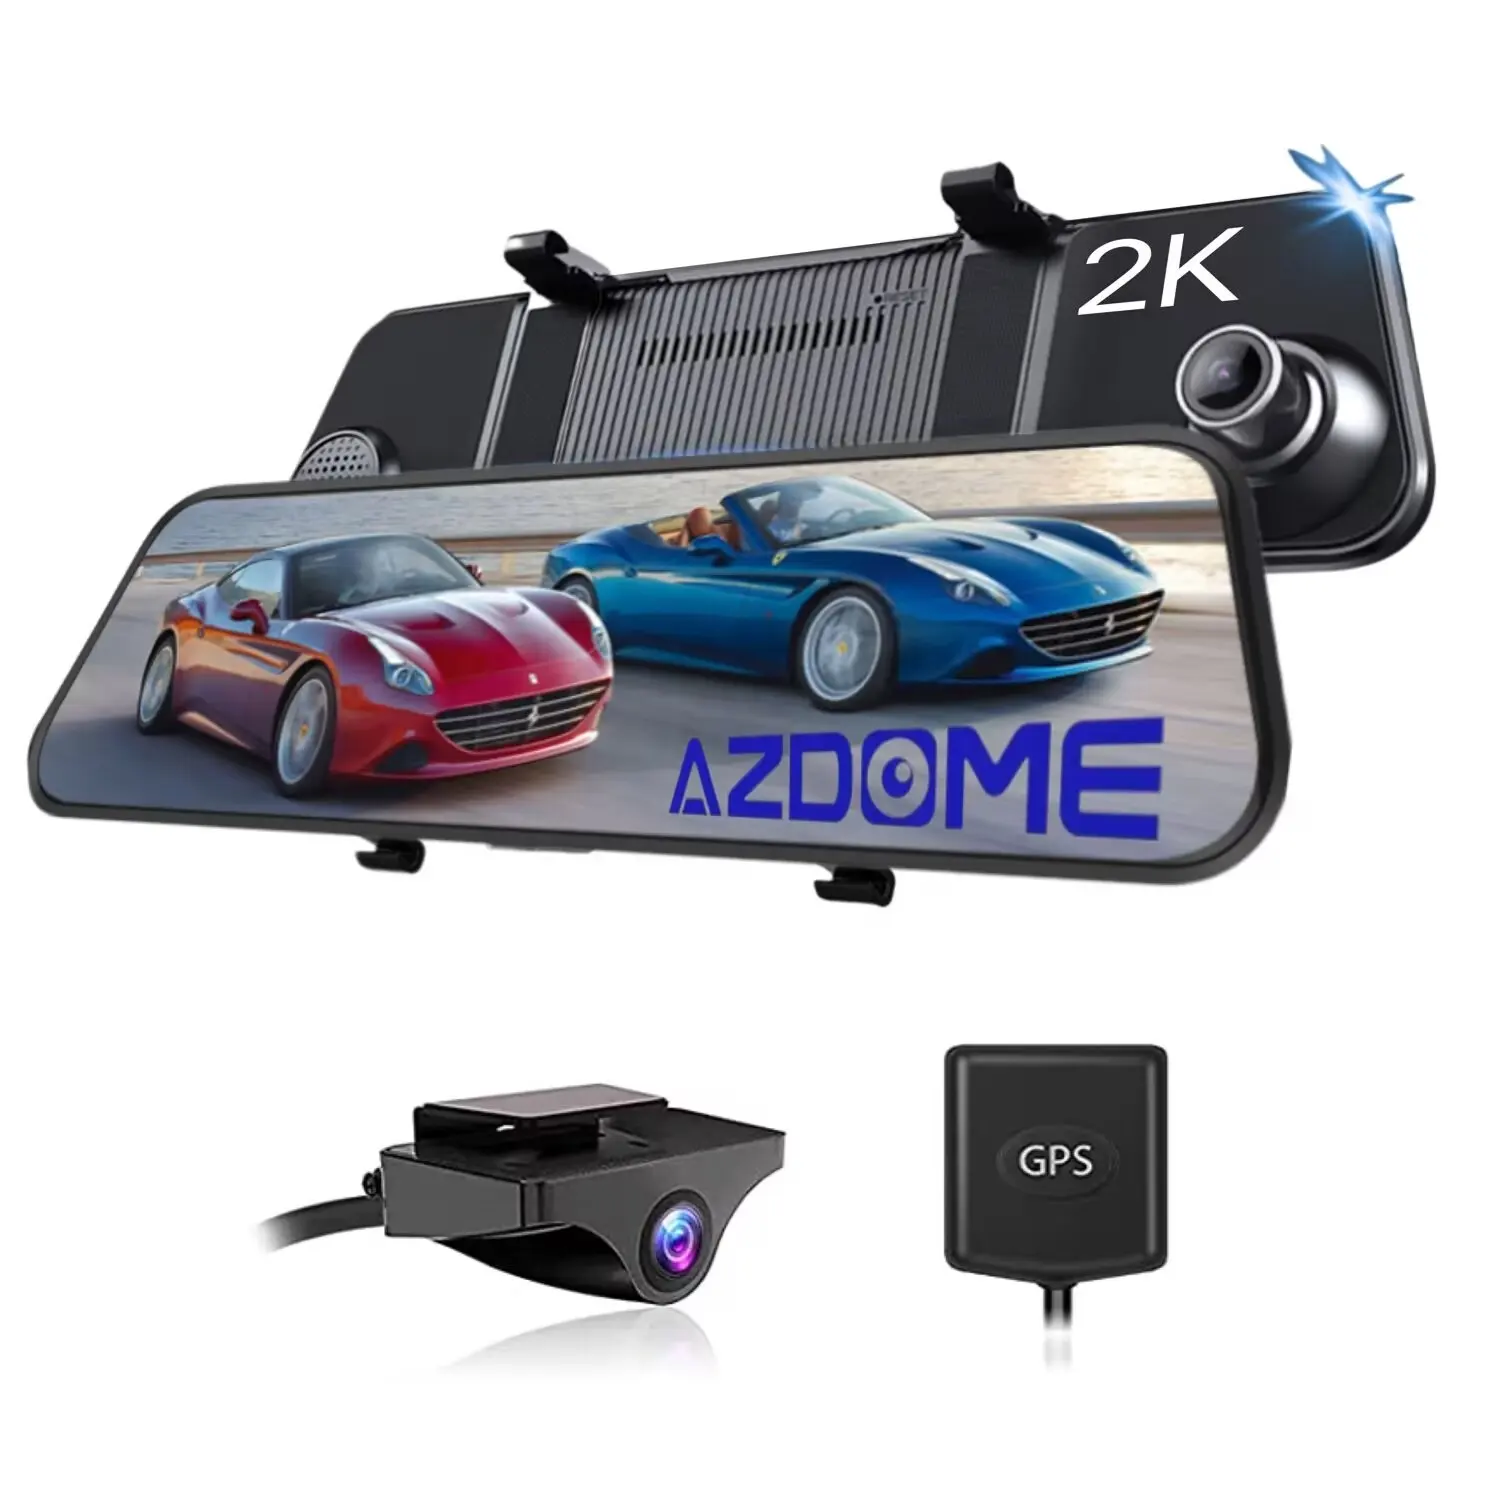 AZDOME PG17 Voiture Miroir DVR GPS 2K Double Caméras 11.8 pouces Écran Tactile Rétroviseur Flux Média Enregistreur Vidéo Vision Nocturne Dash Cam